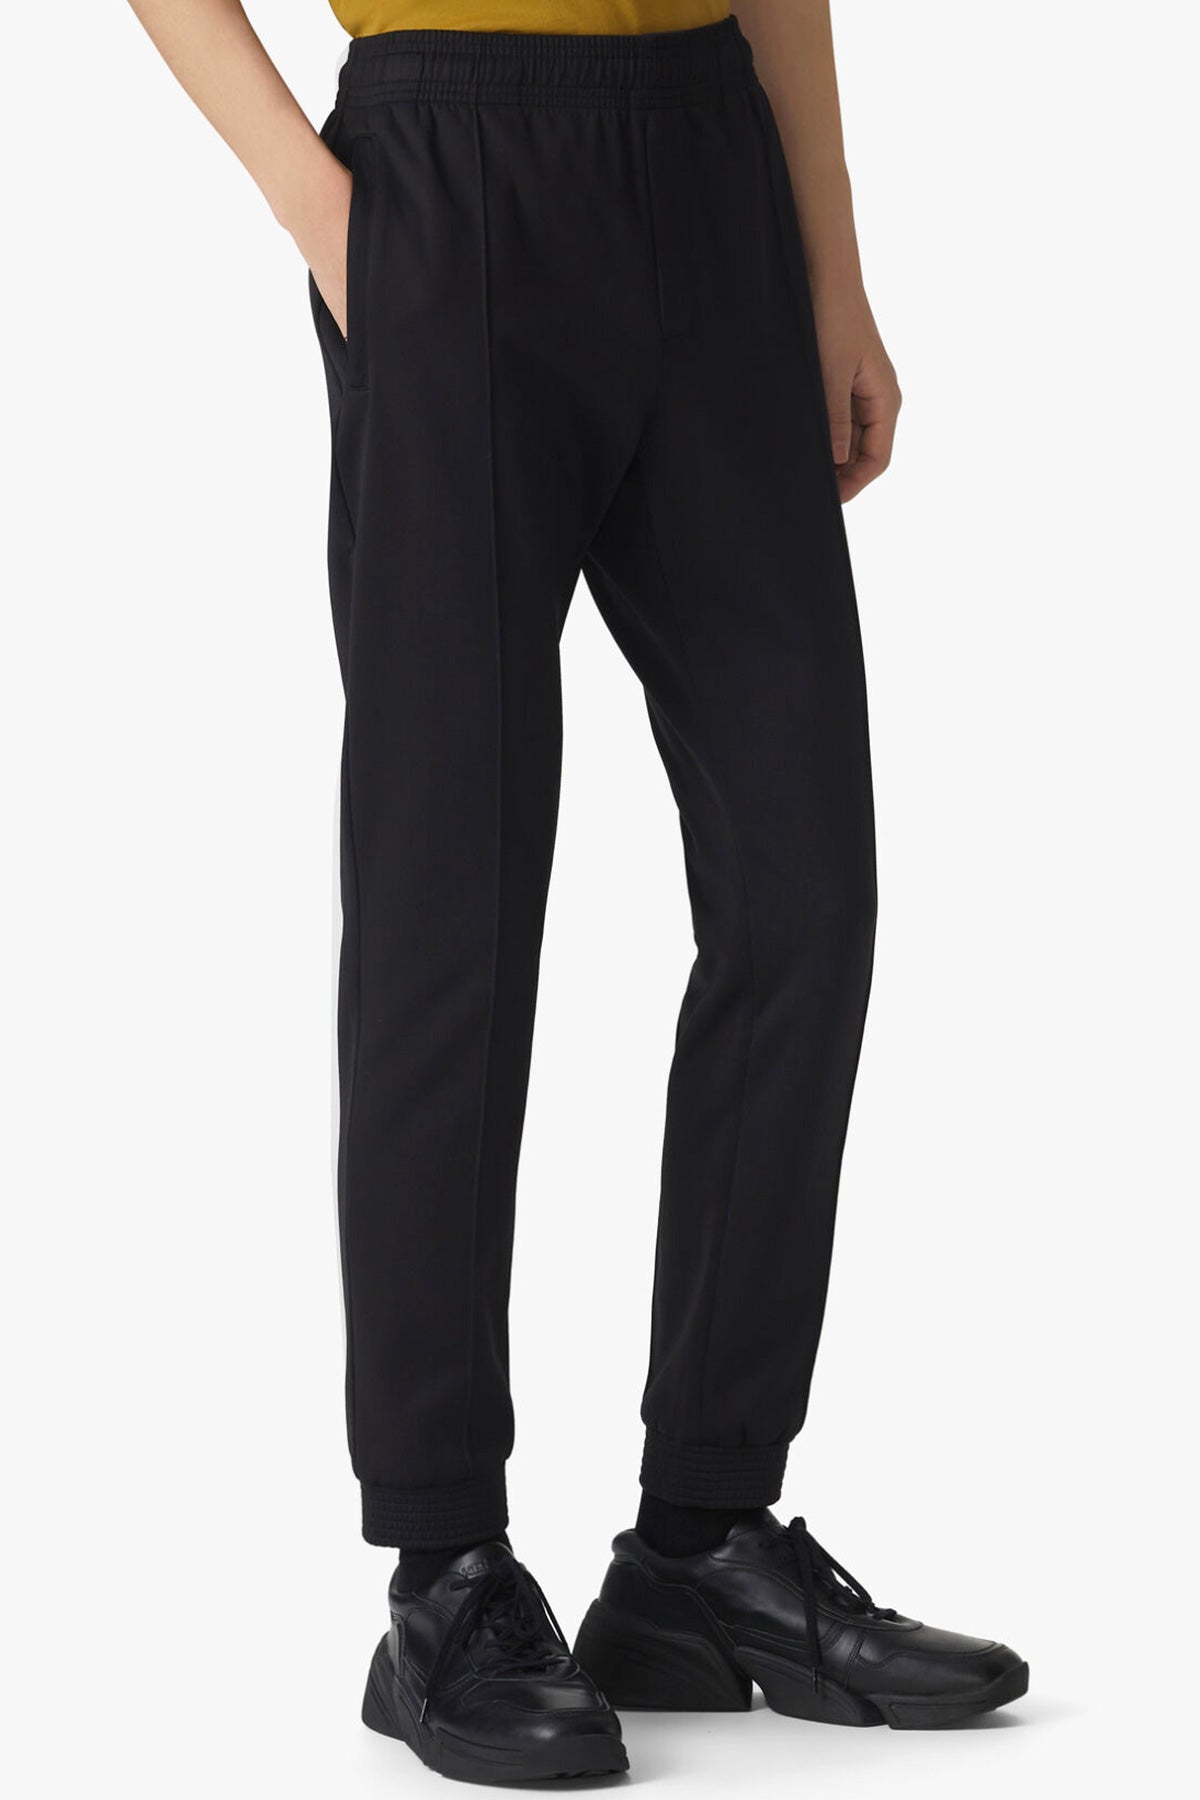 Kenzo Kaplan Logolu Jogger Pantolon-Libas Trendy Fashion Store